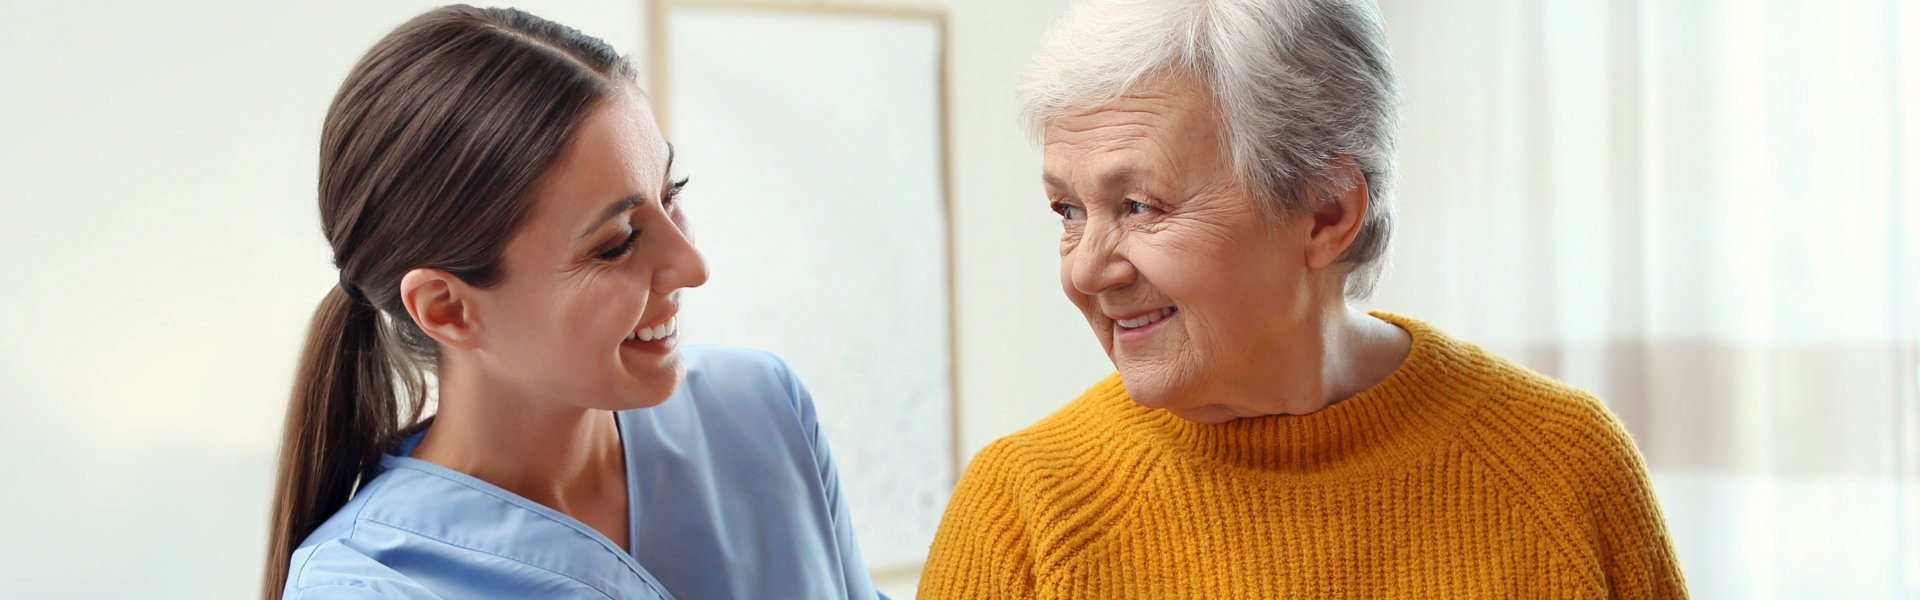 caregiver assist her patient in standing